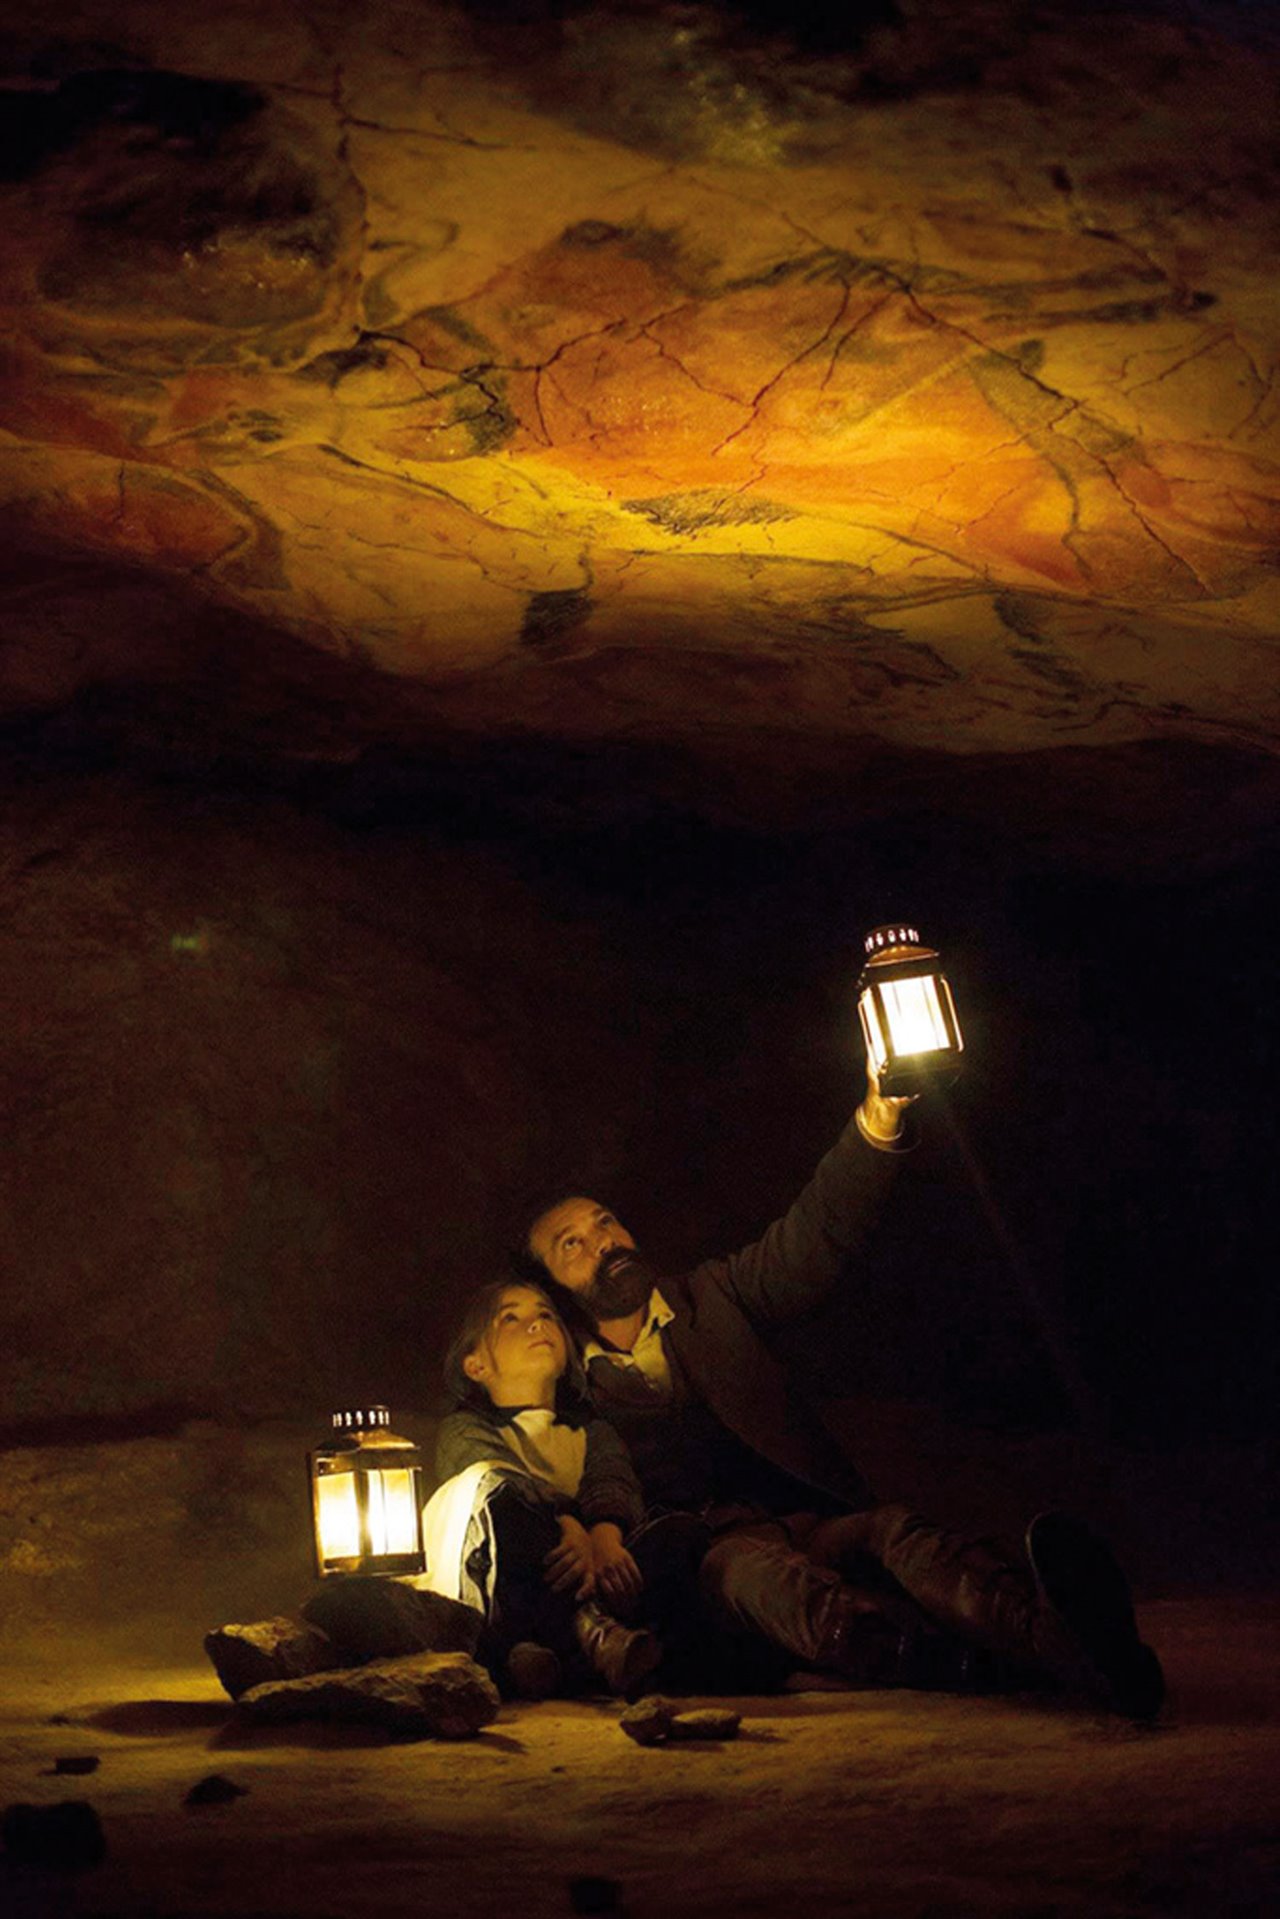 Pinturas rupestres en las Cuevas de Altamira, Cantabria.